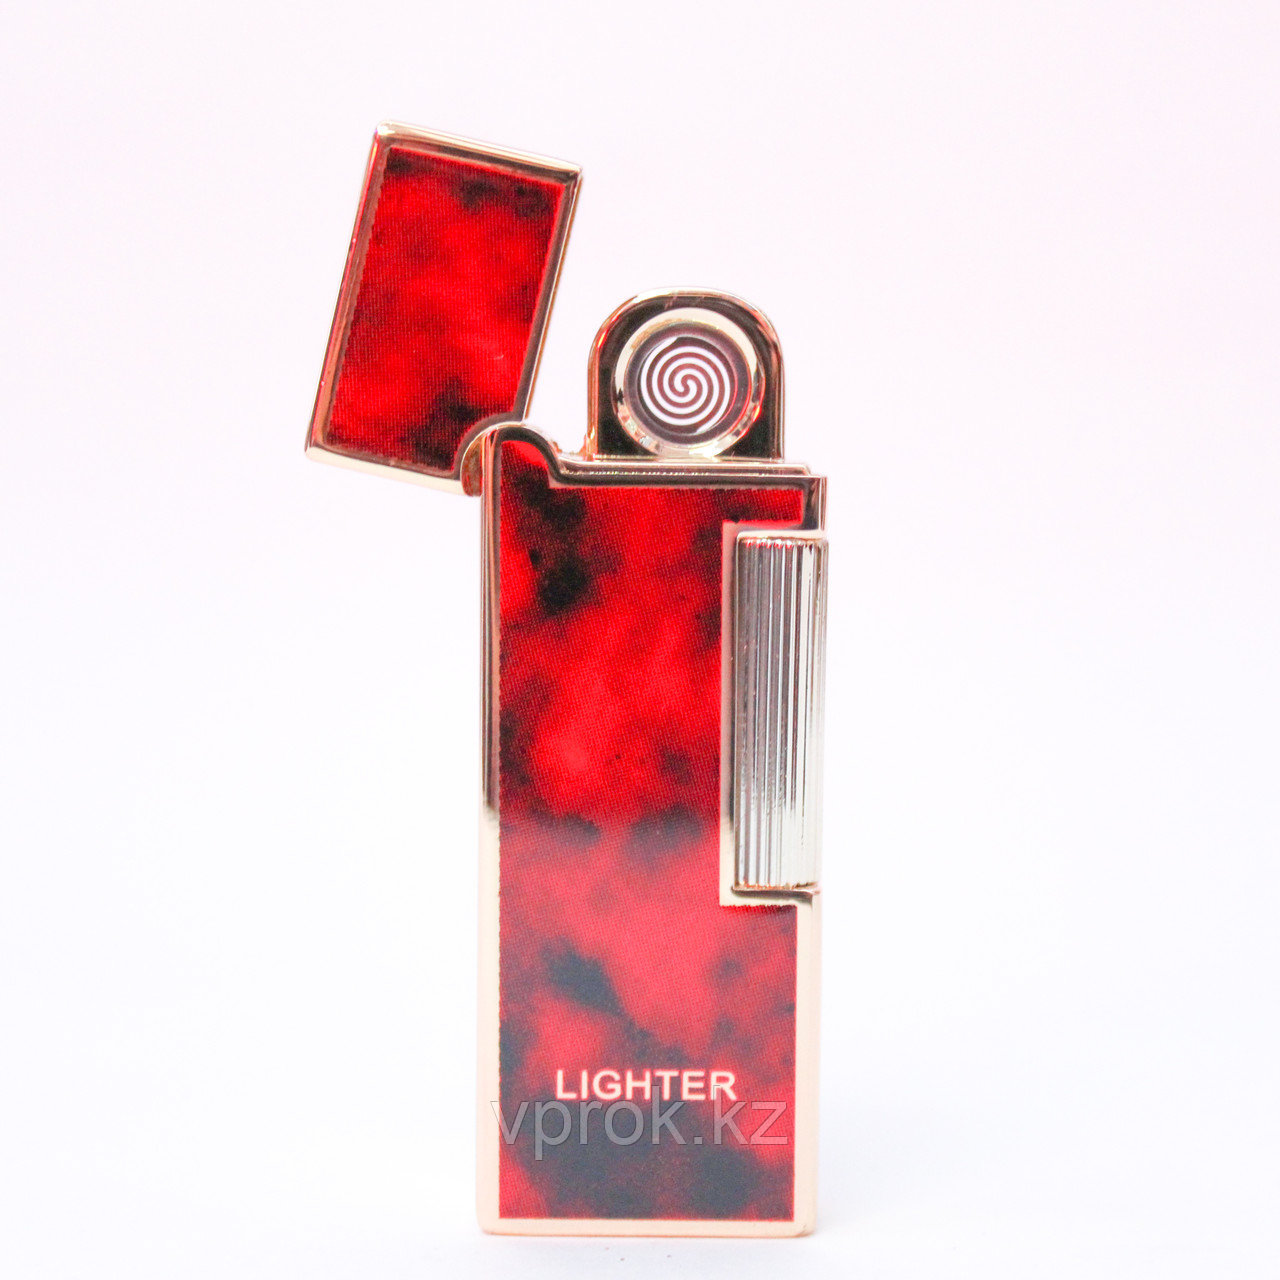 Электронная USB зажигалка, Lighter, красно-черная